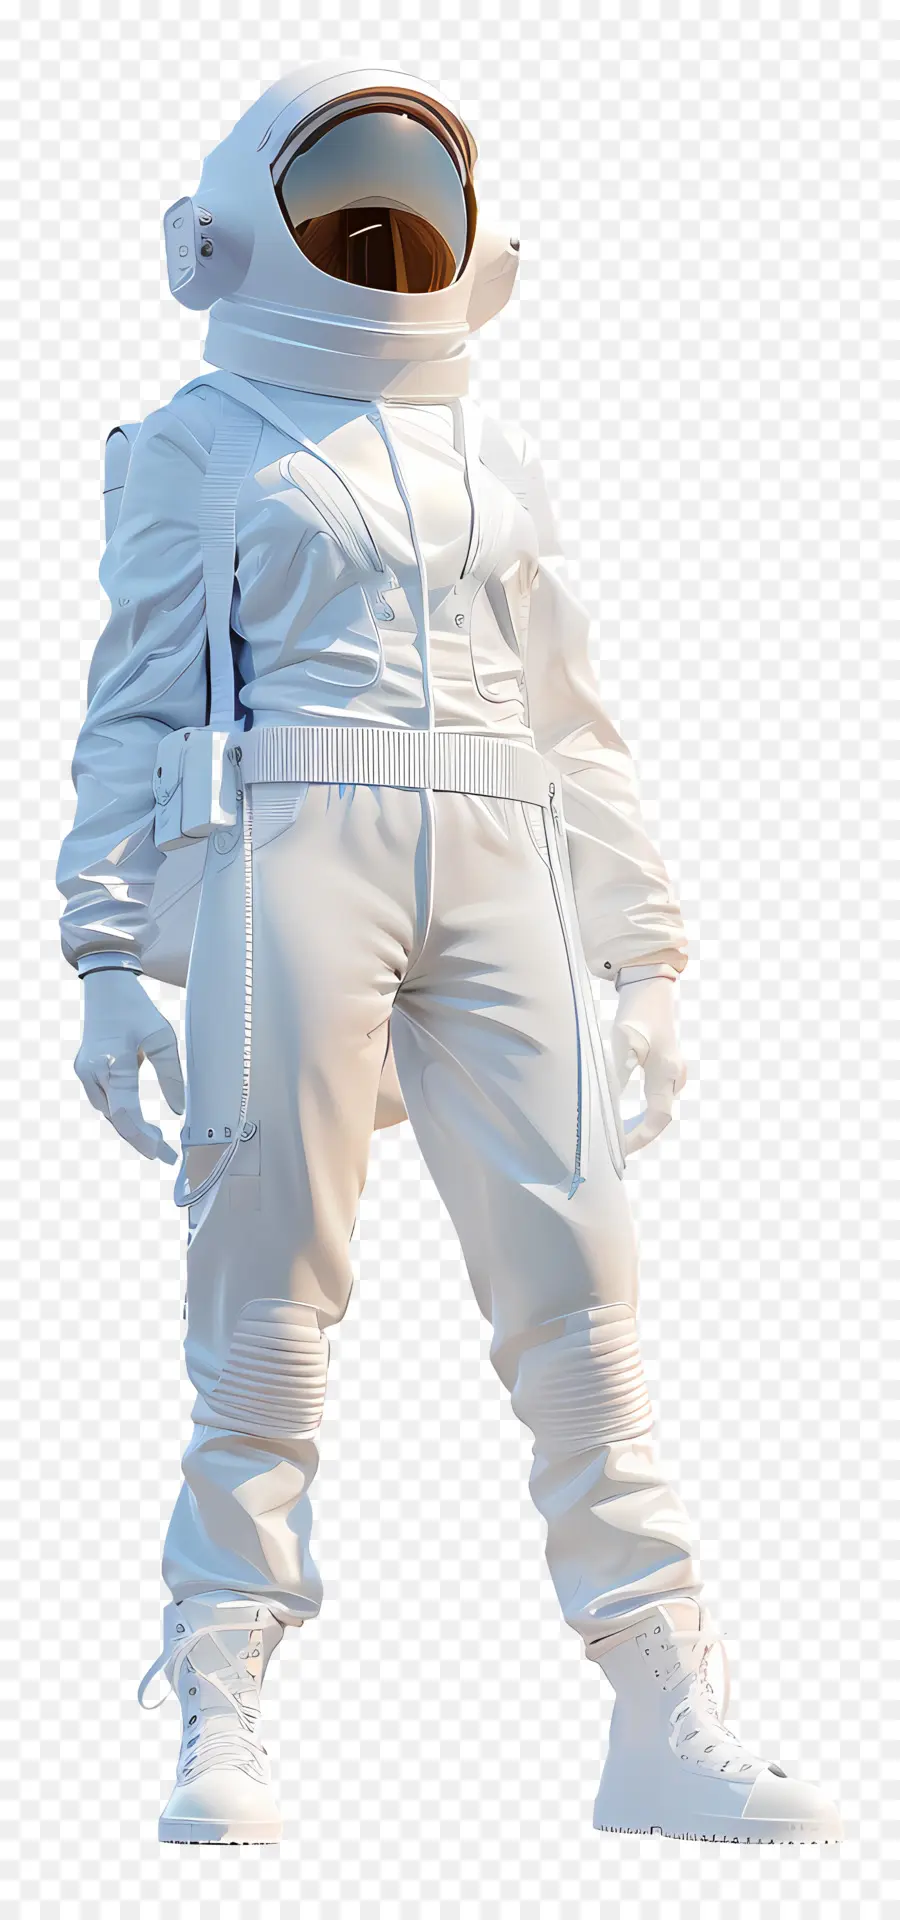 L'astronauta - Donna astronauta in abito bianco, casco